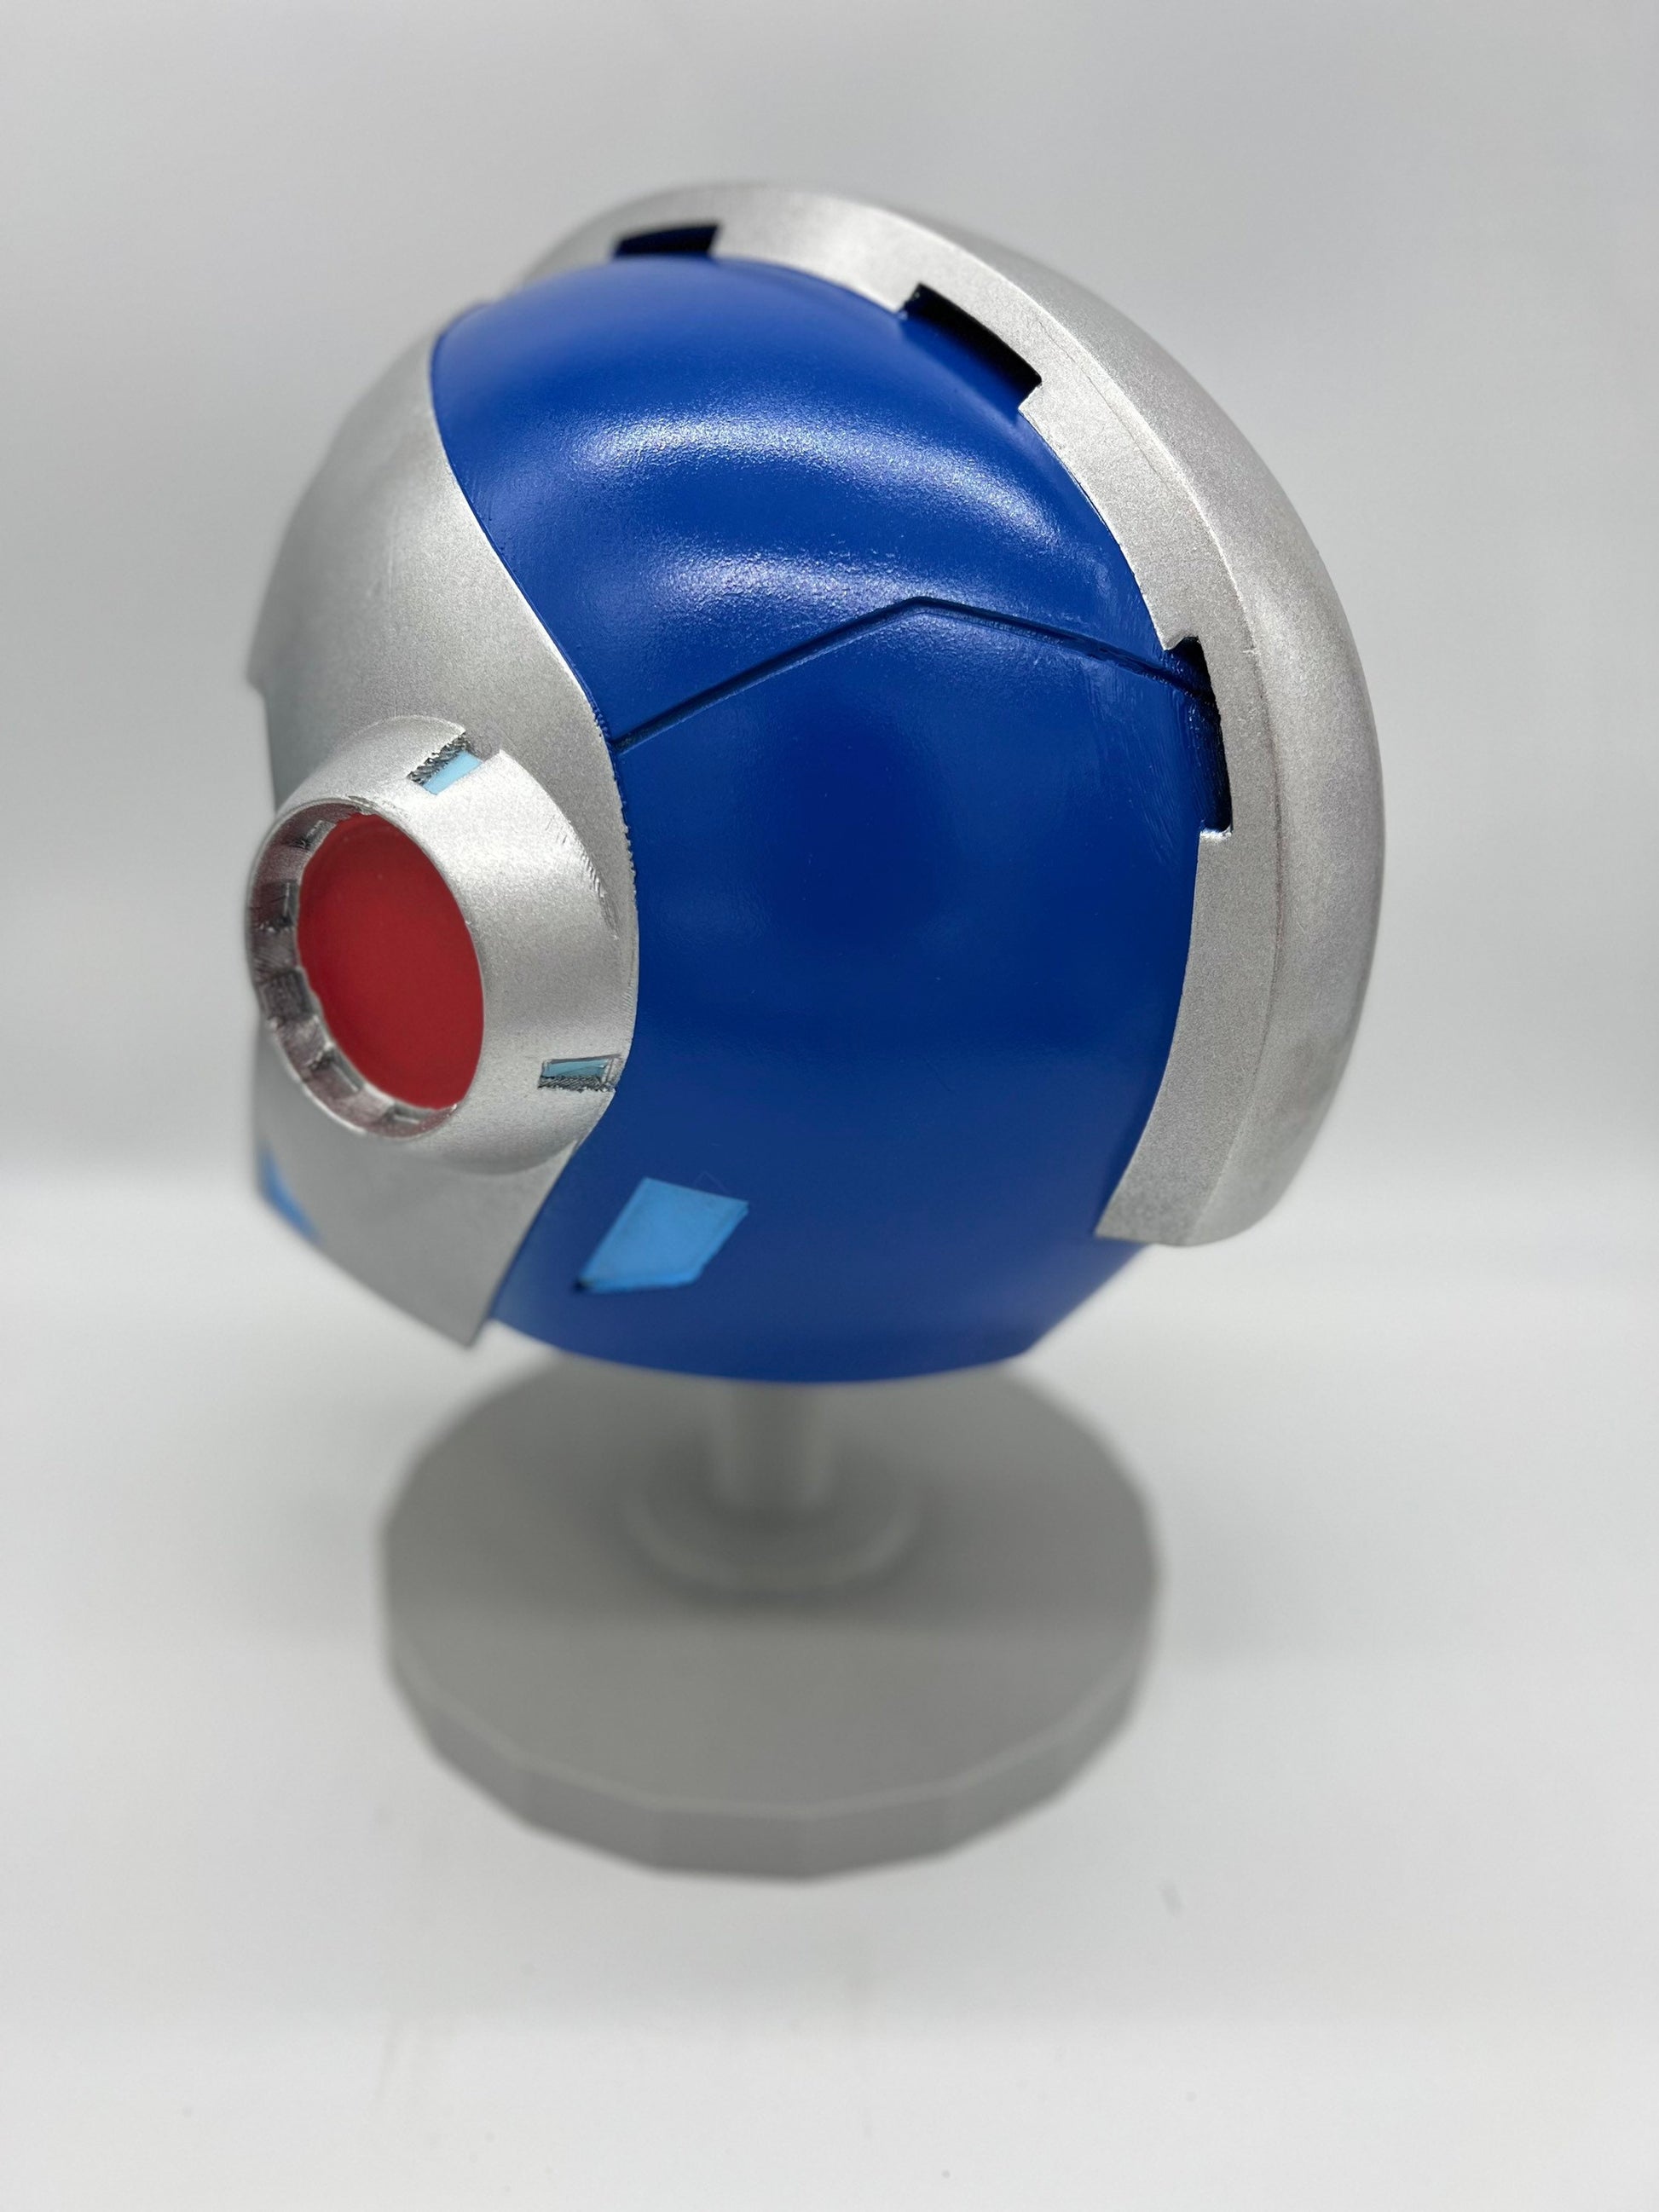 Mega Man X Cosplay Helmet